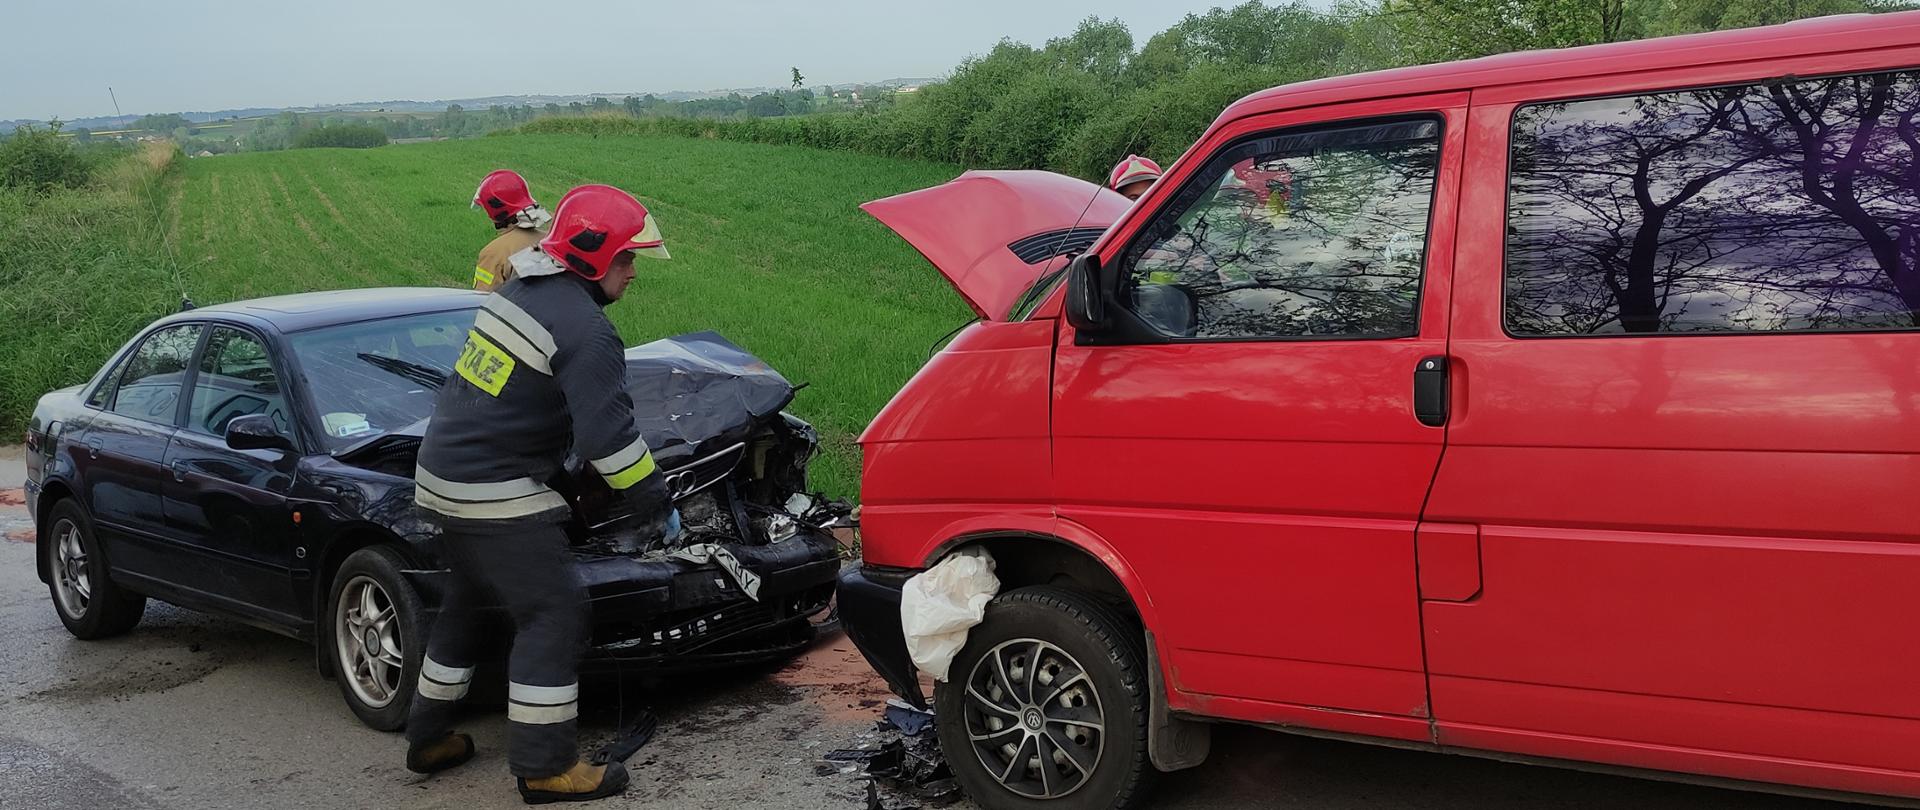 Wypadek drogowy w miejscowości Zięblice –powiat
kazimierski